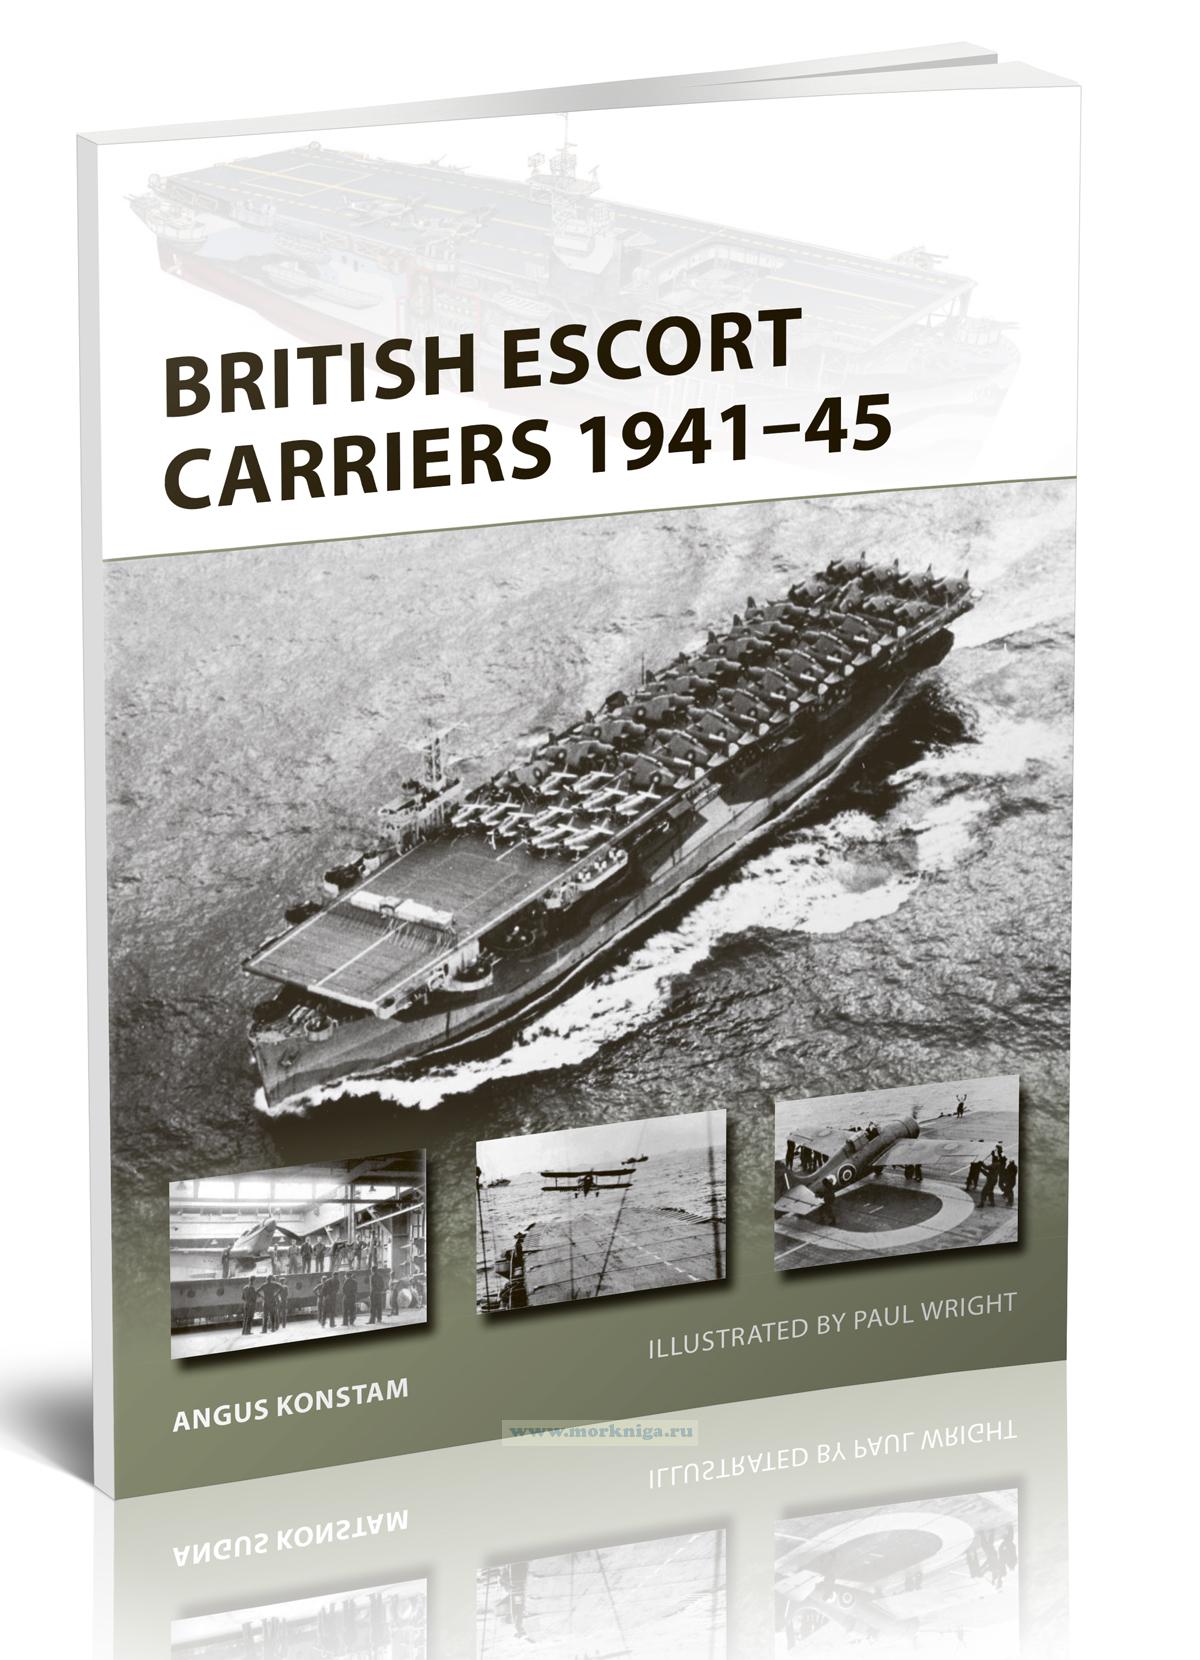 British escort carriers 1941-45/Британские авианосцы 1941-45